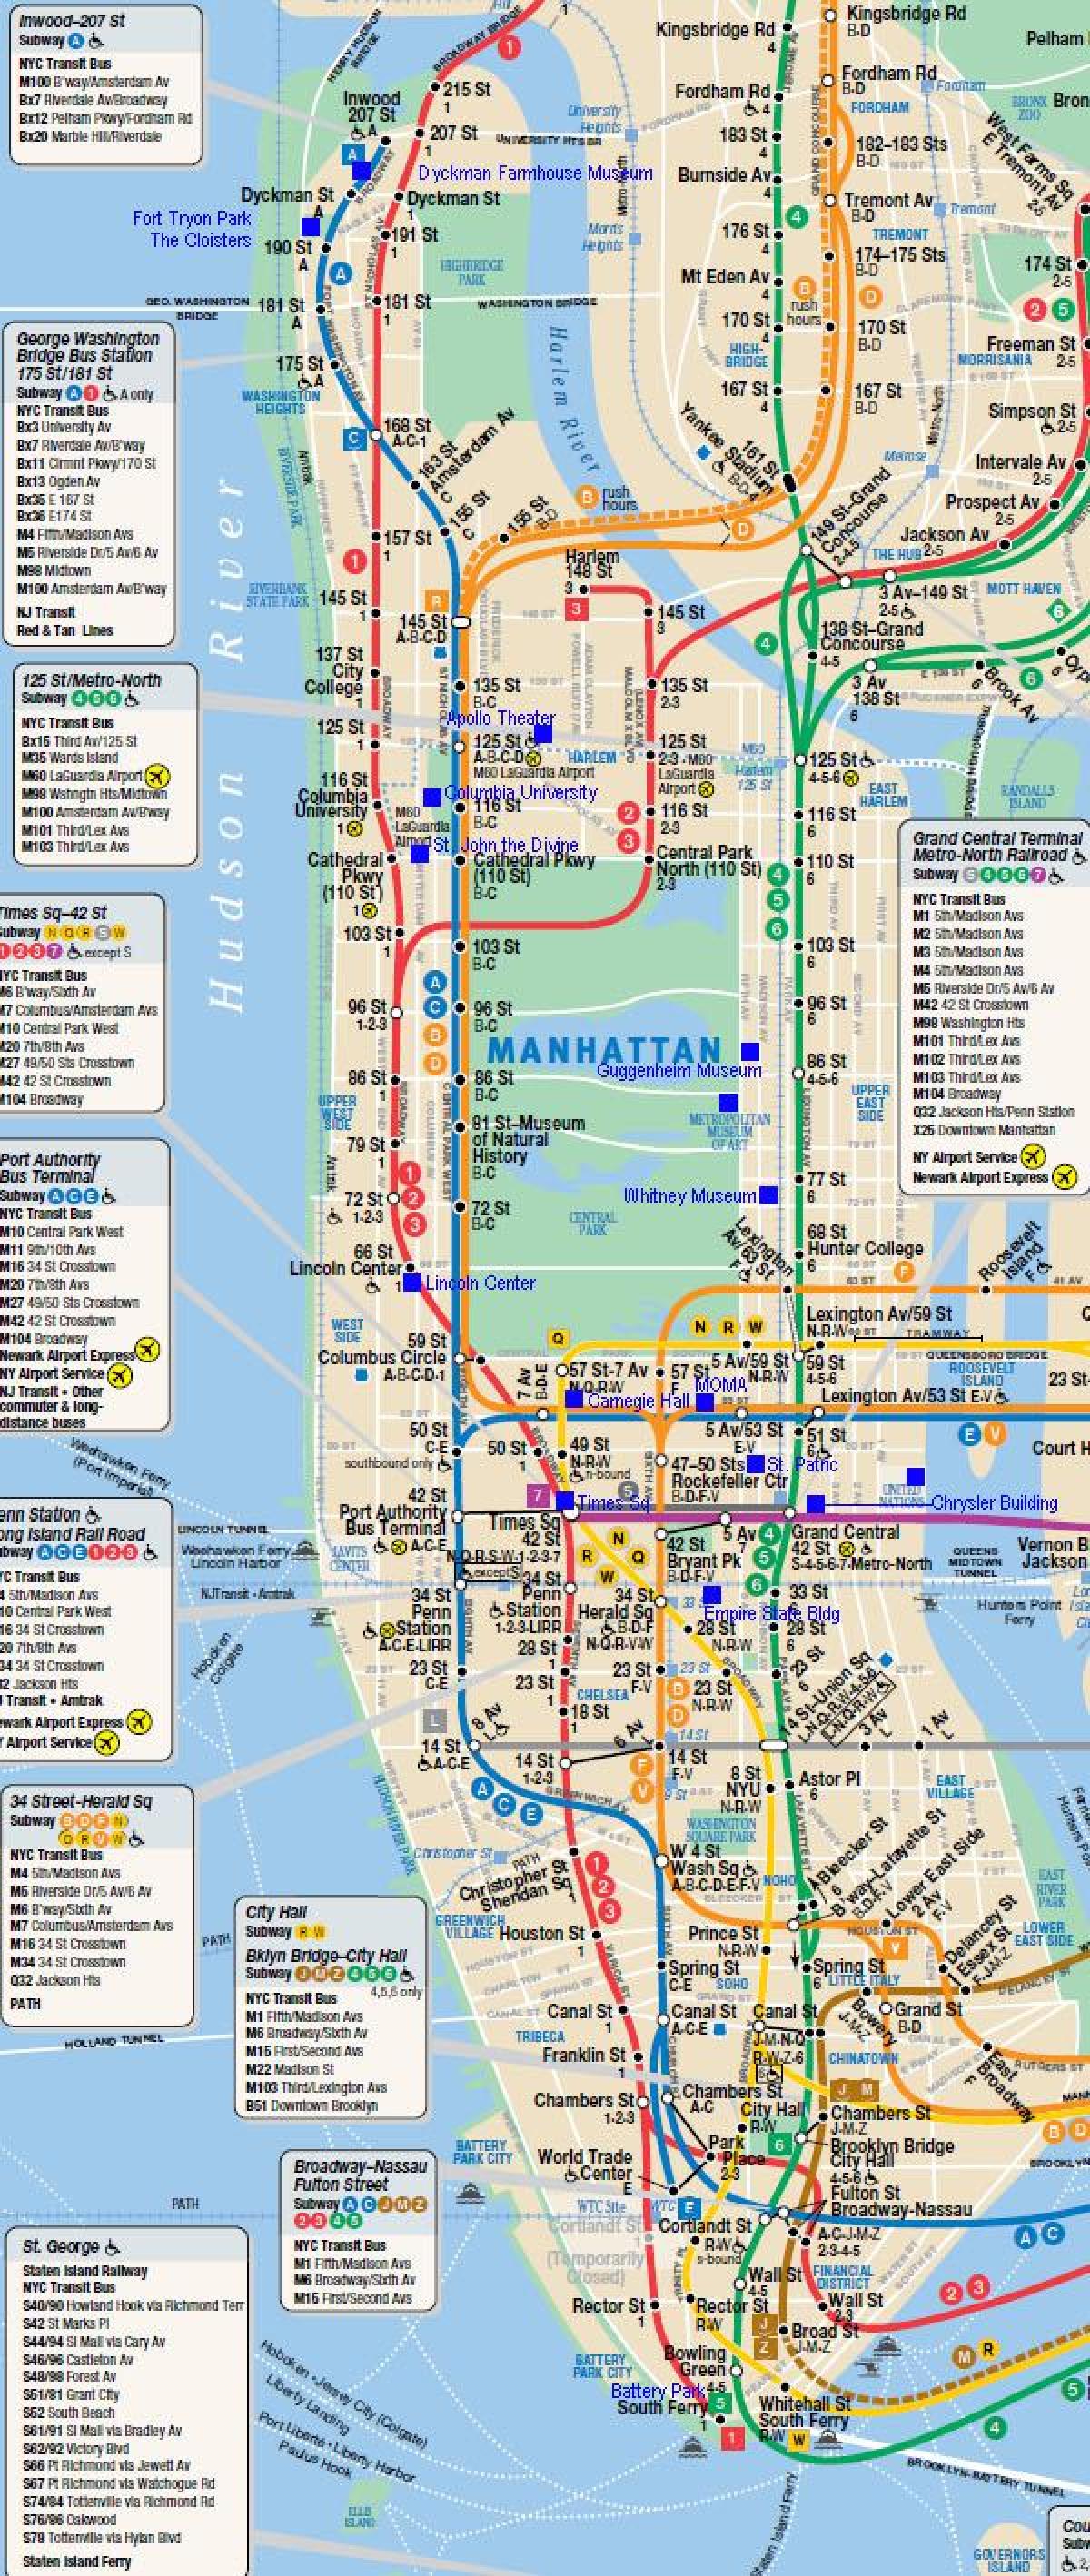 मैनहट्टन रेल मानचित्र